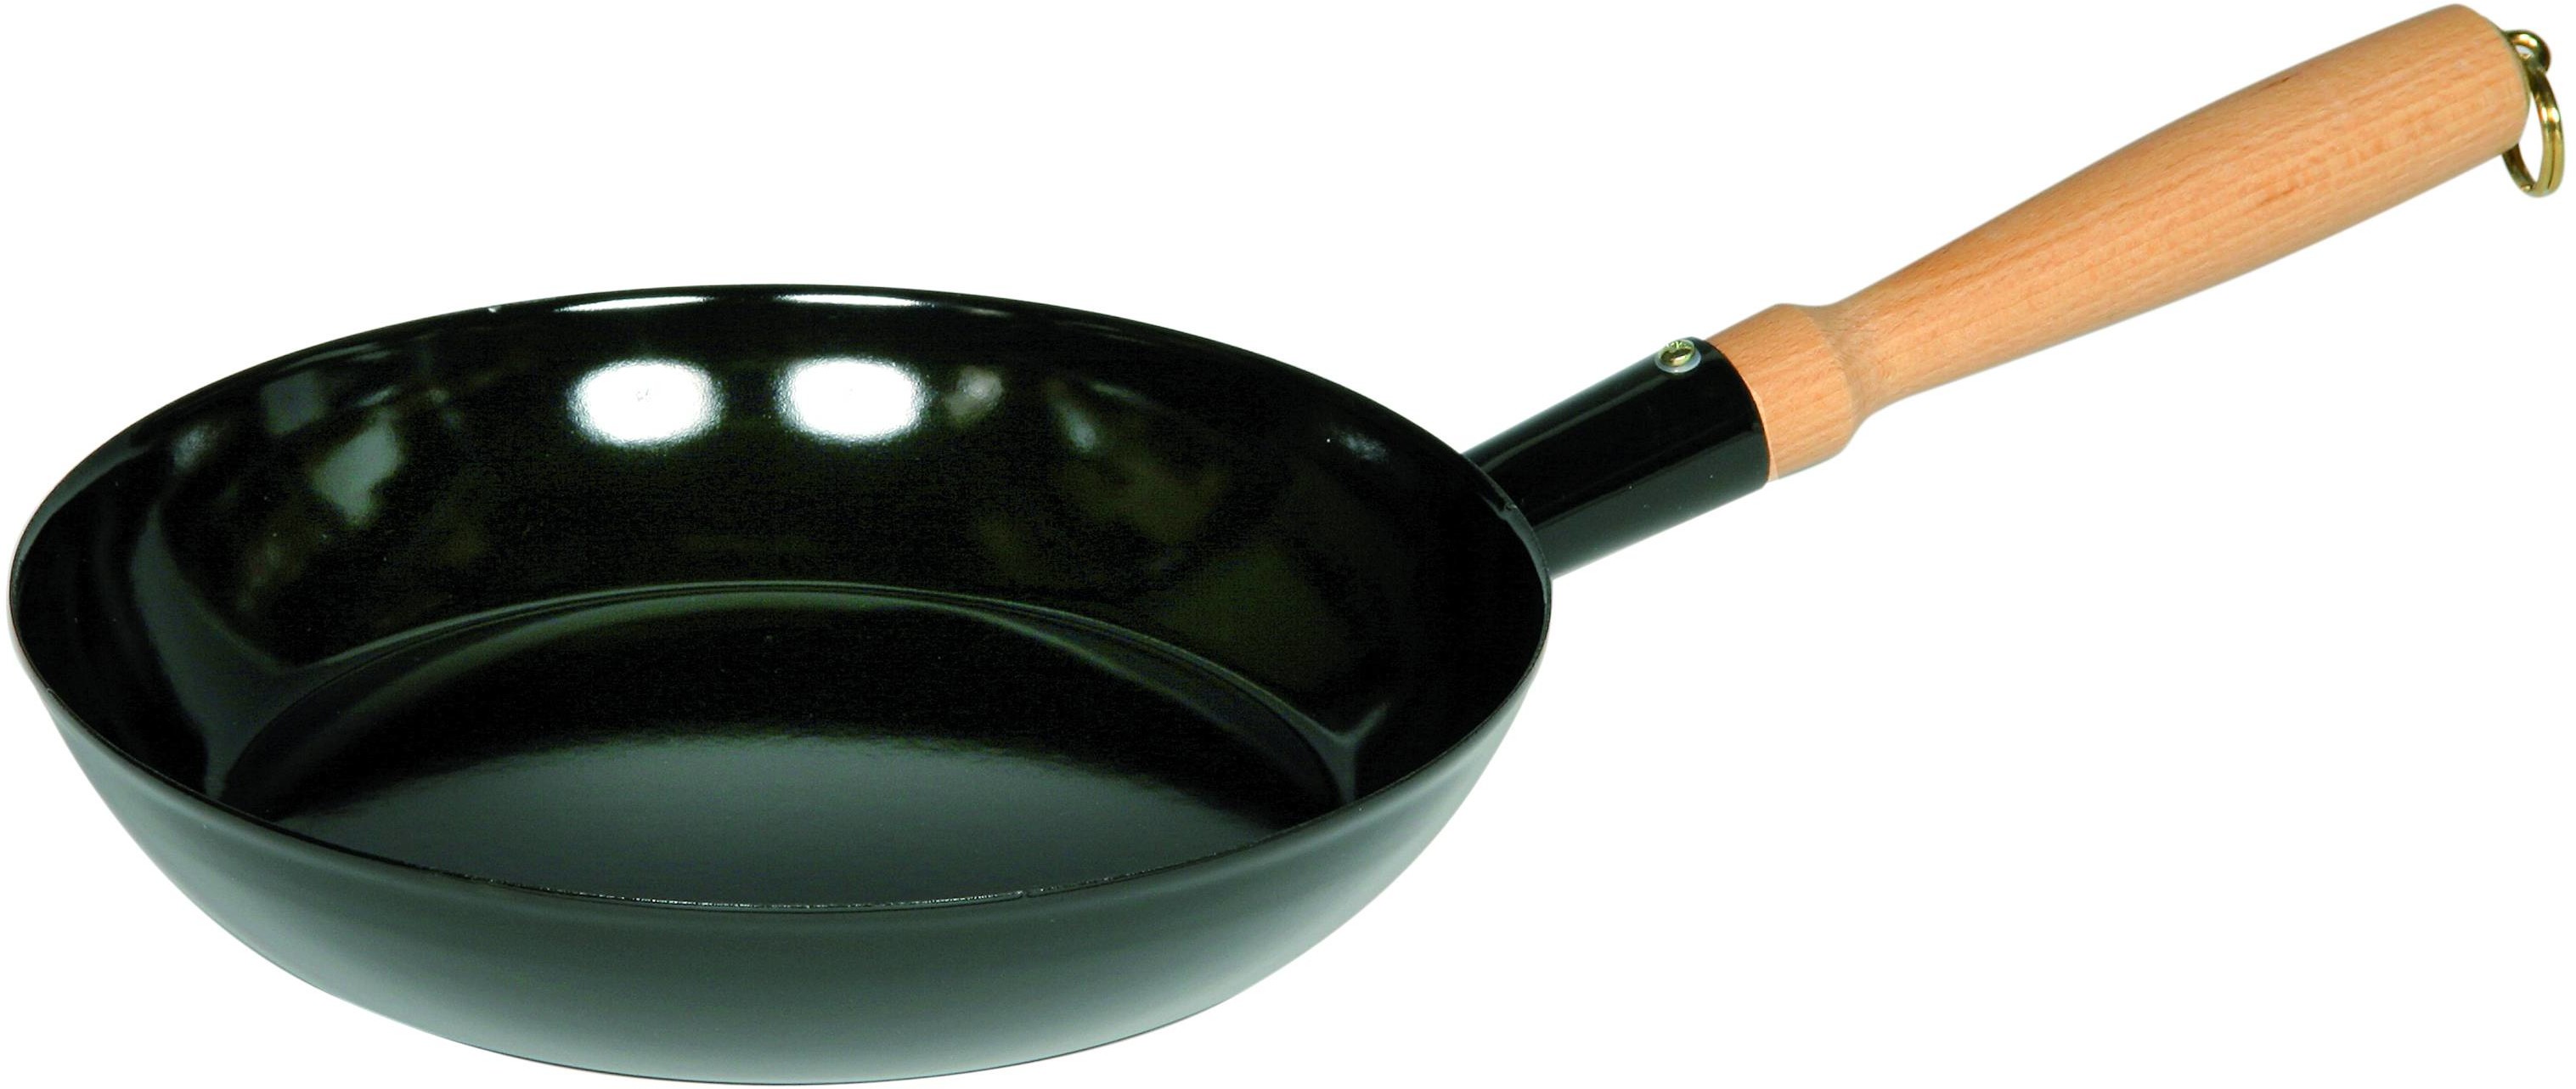 Riess Patelnia ceramiczna czarna 24 cm CLASSIC Schwarzemaille